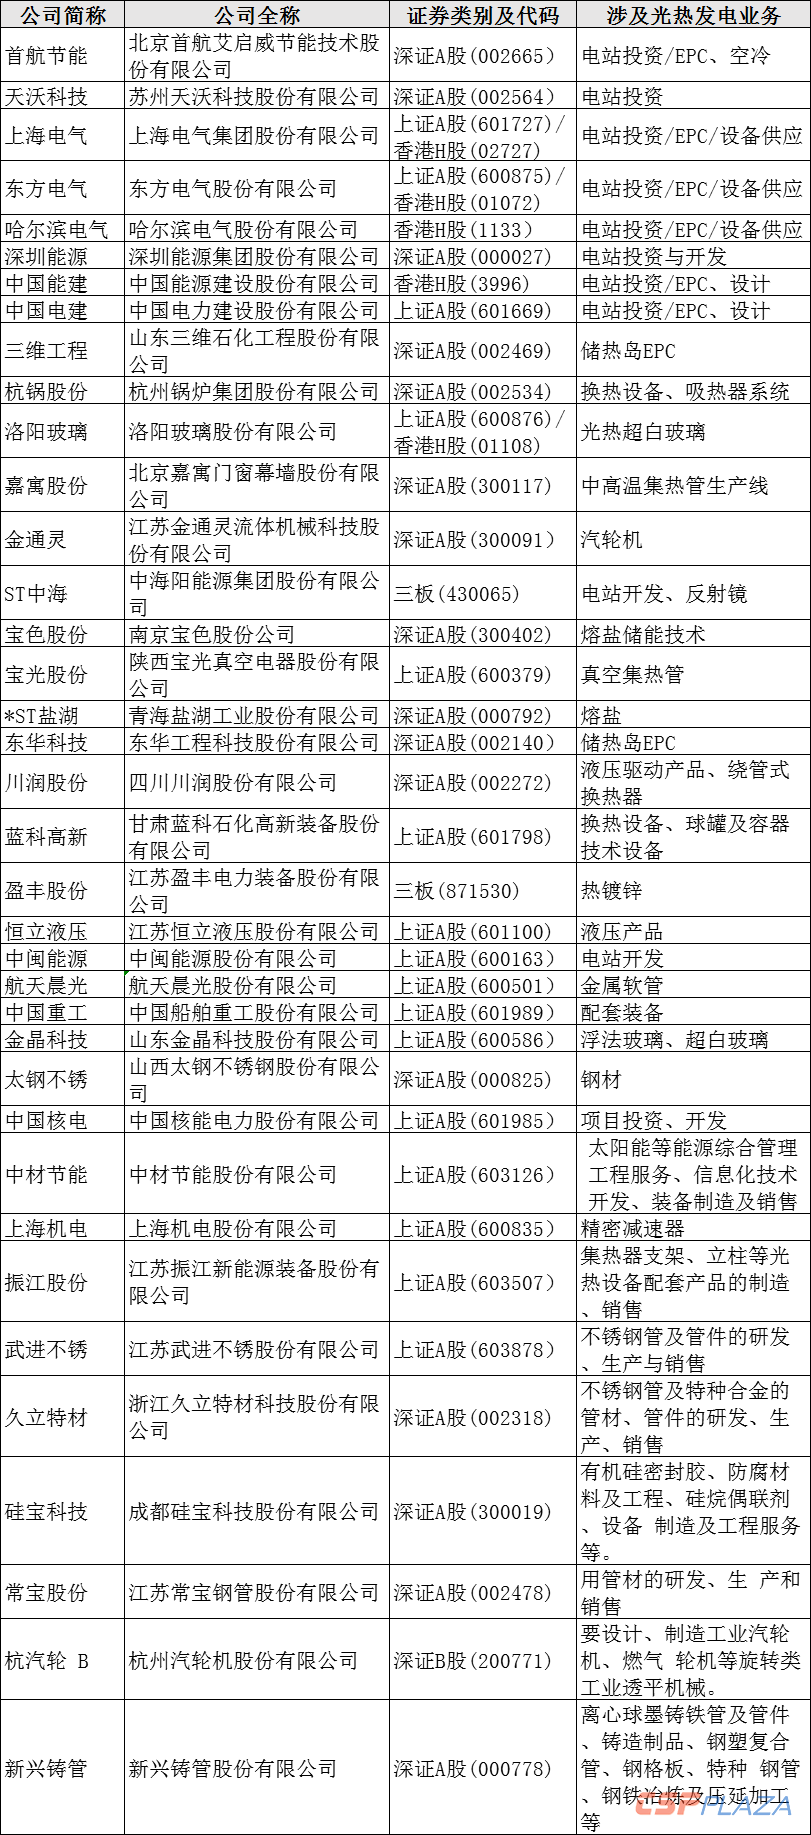 详细内容 - 河北省招标投标公共服务平台_副本.png